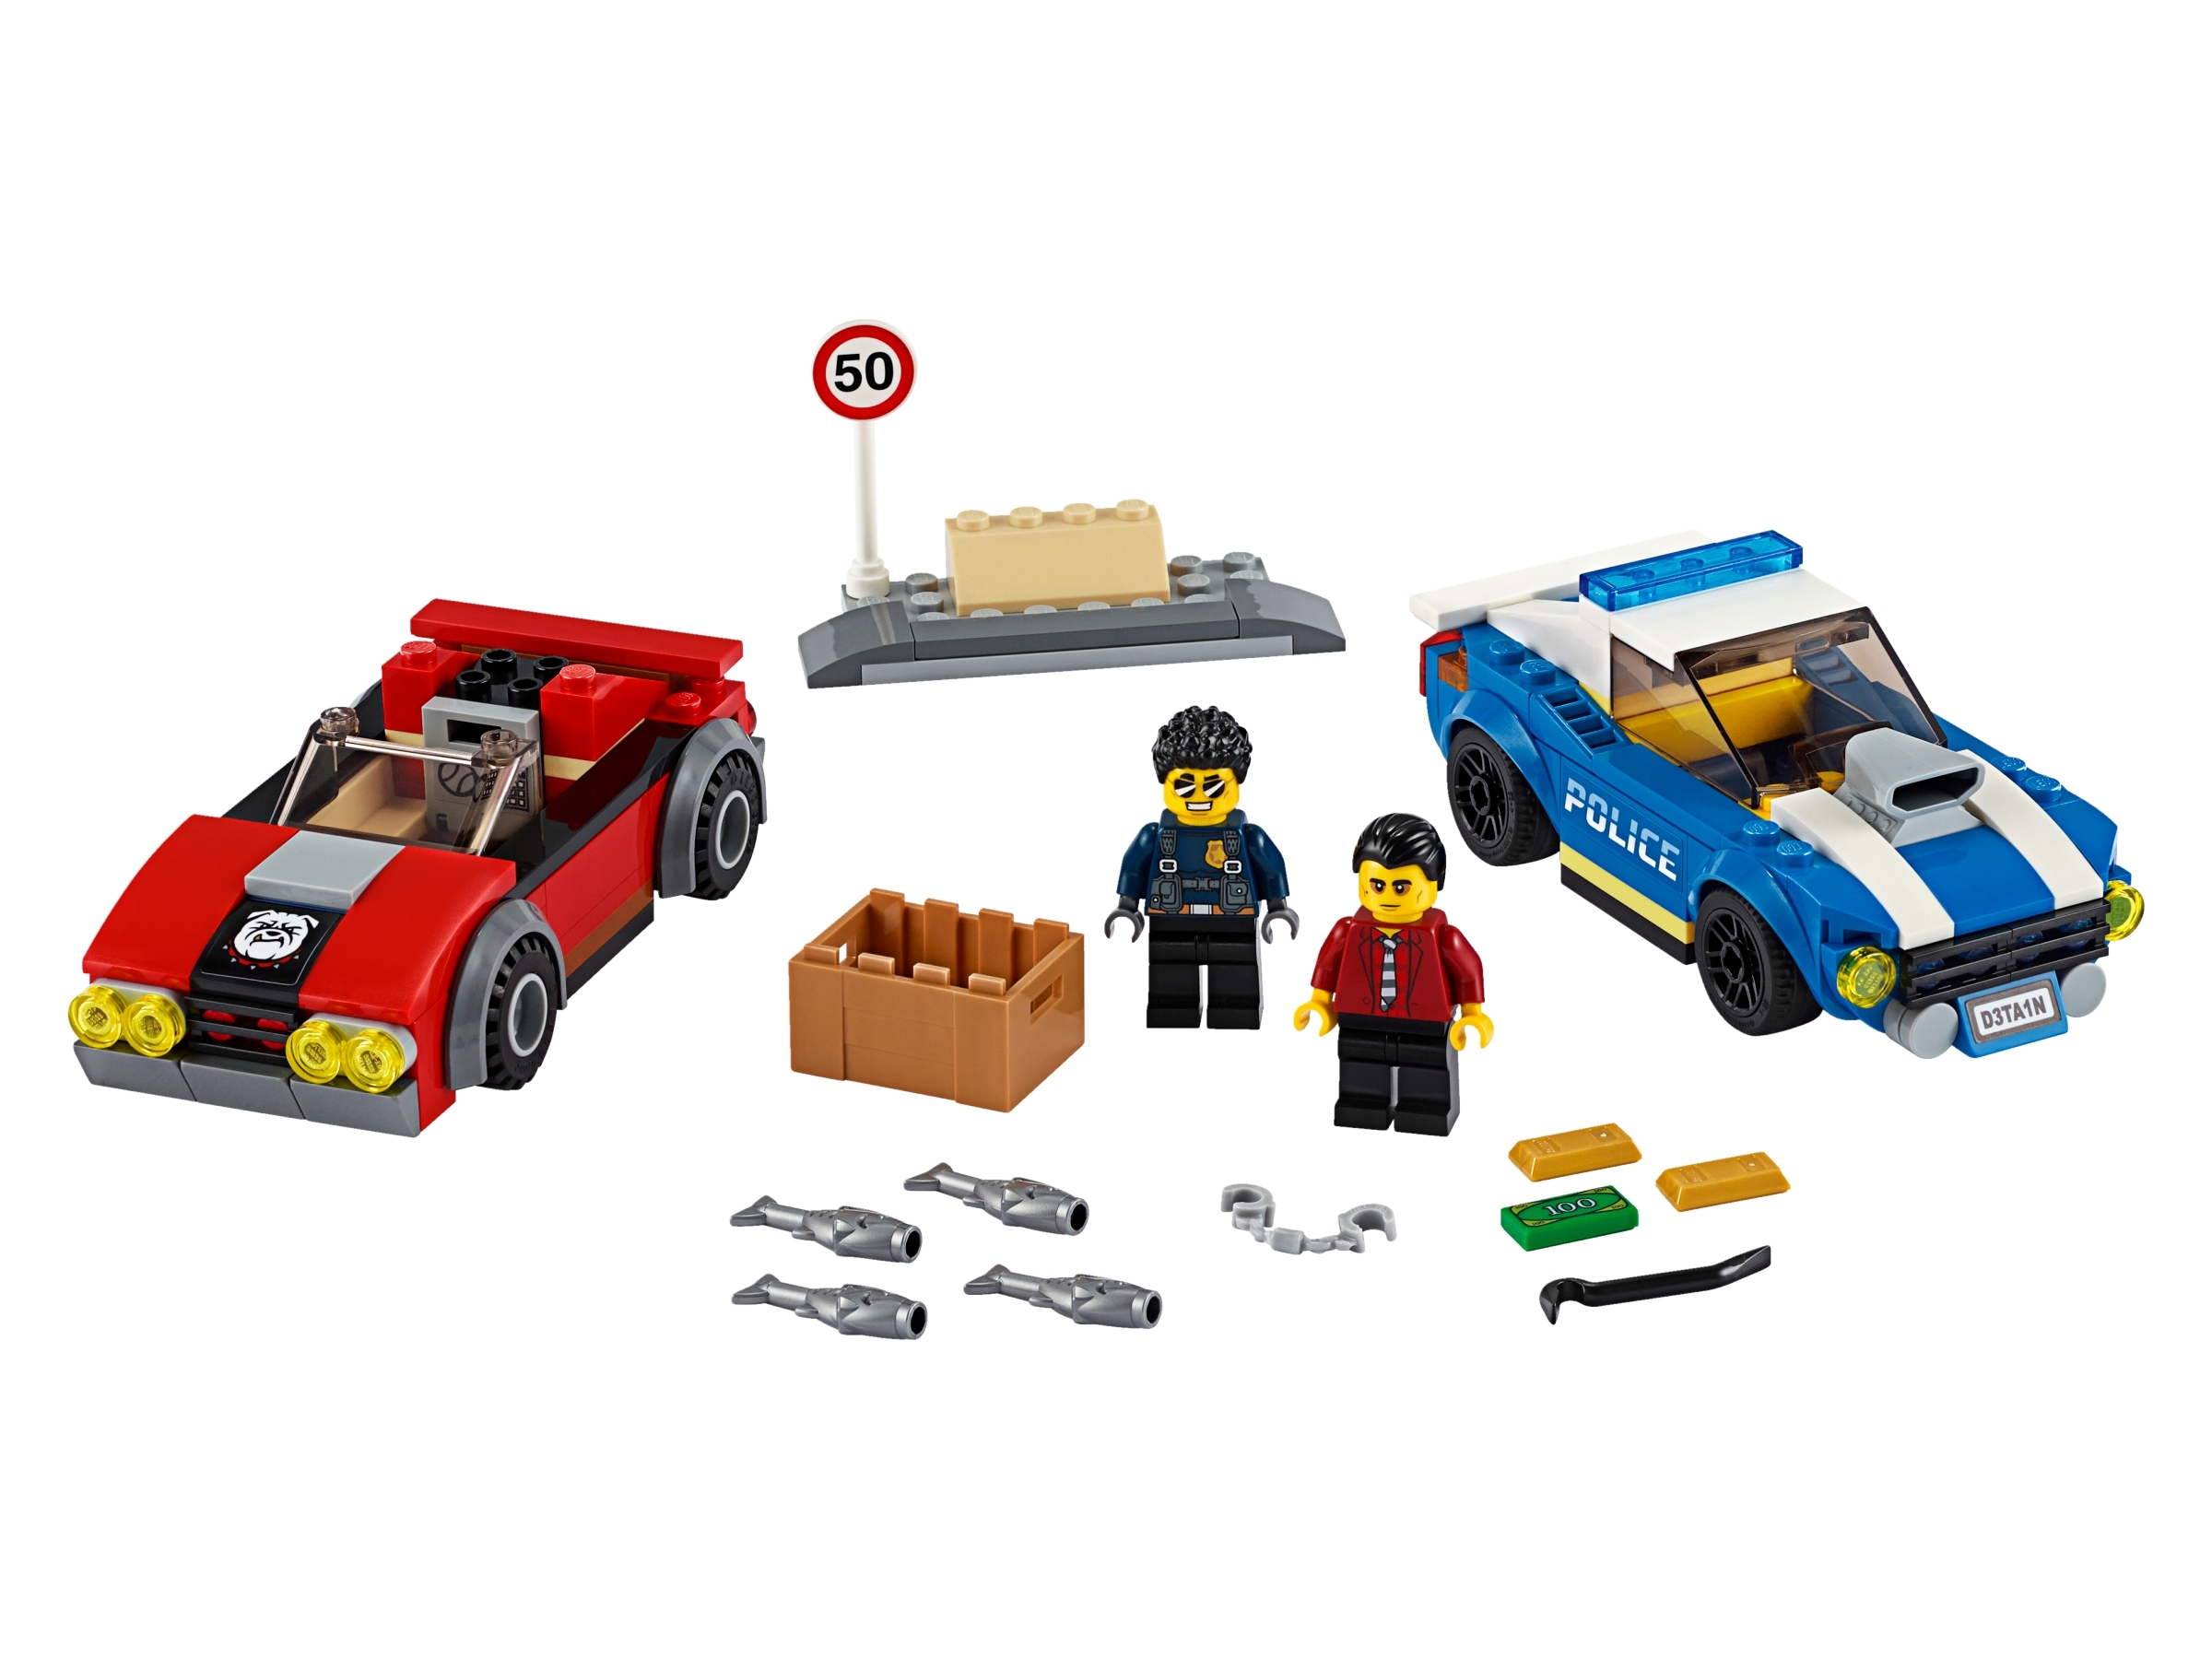 LEGO City Aresztowanie na autostradzie 60242